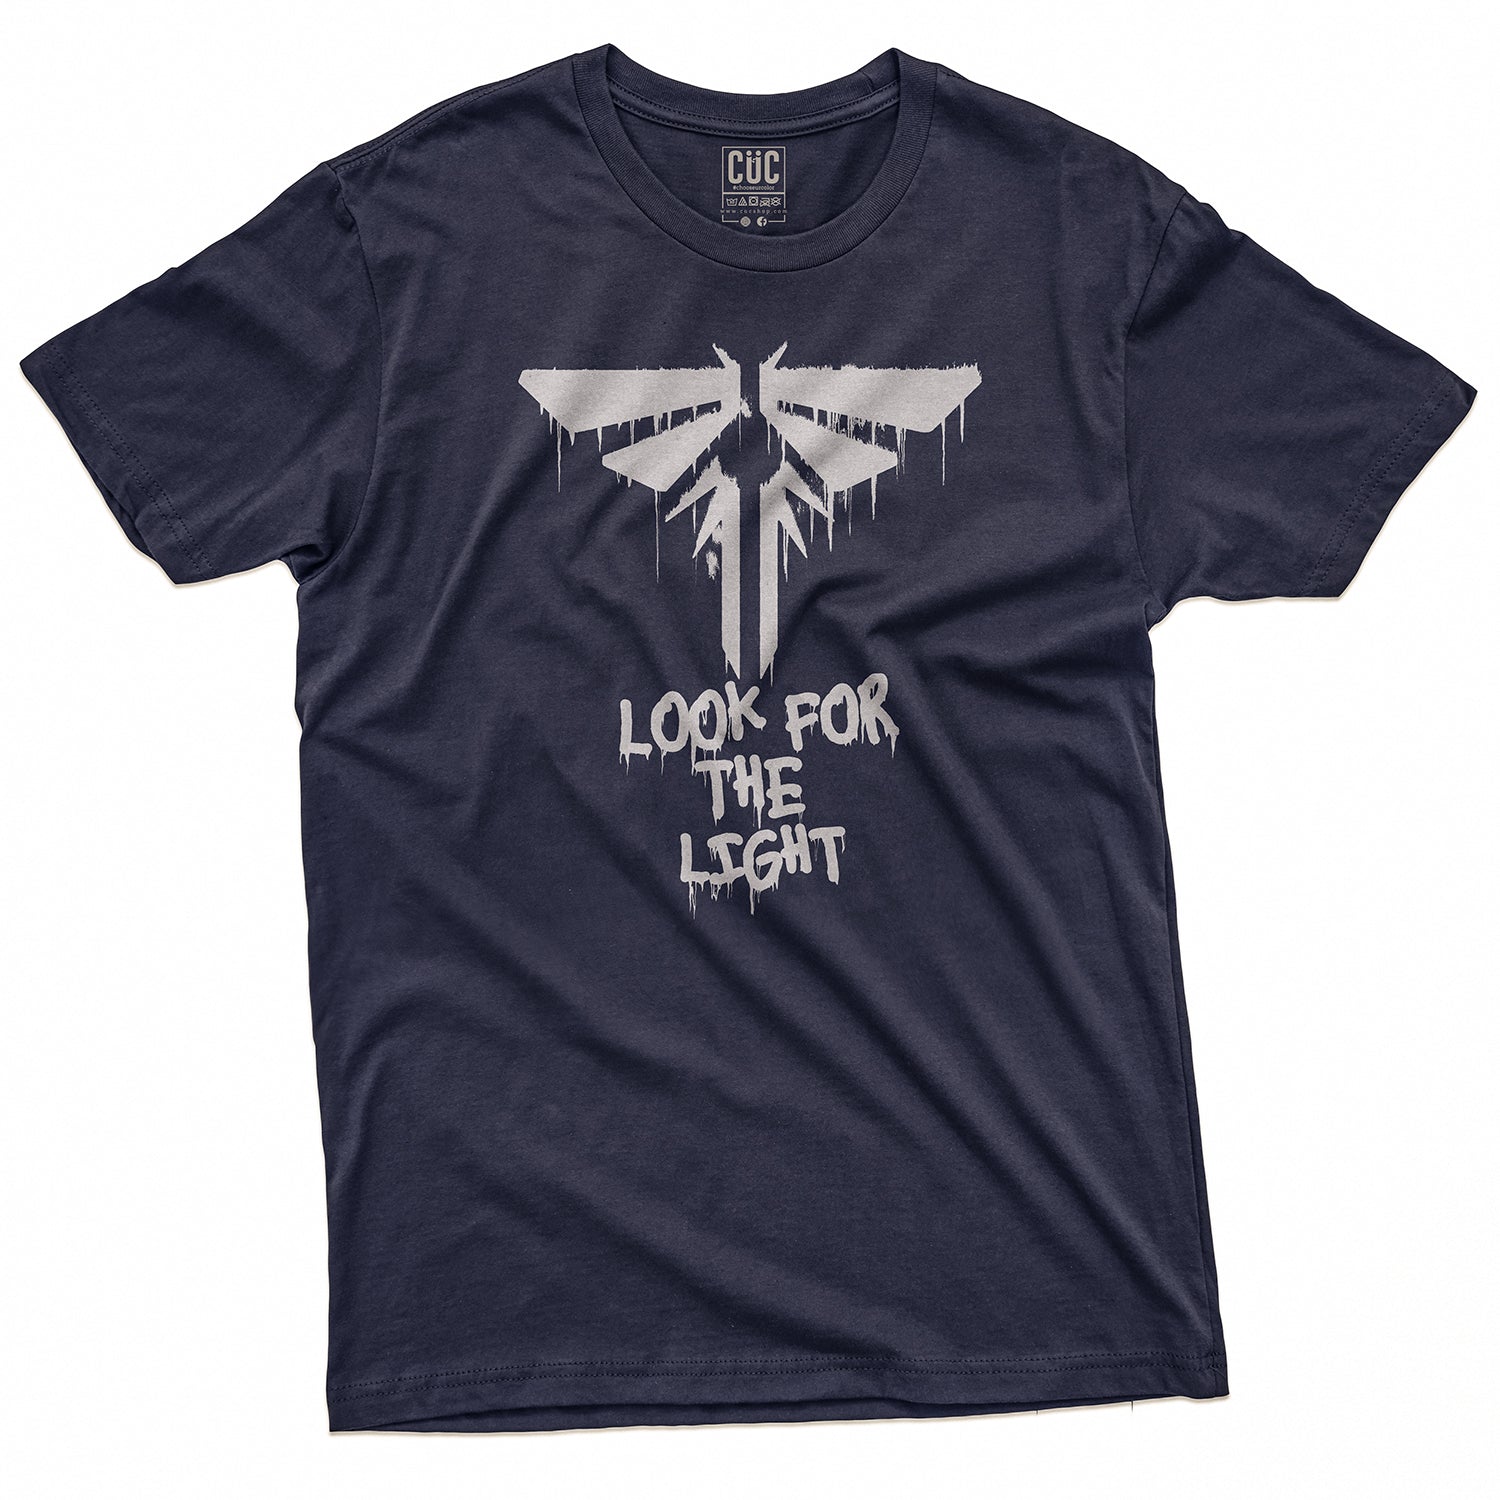 CUC T-Shirt LOOK 4 THE LIGHT - The Last of Us - Games - dark  #chooseurcolor - CUC chooseurcolor